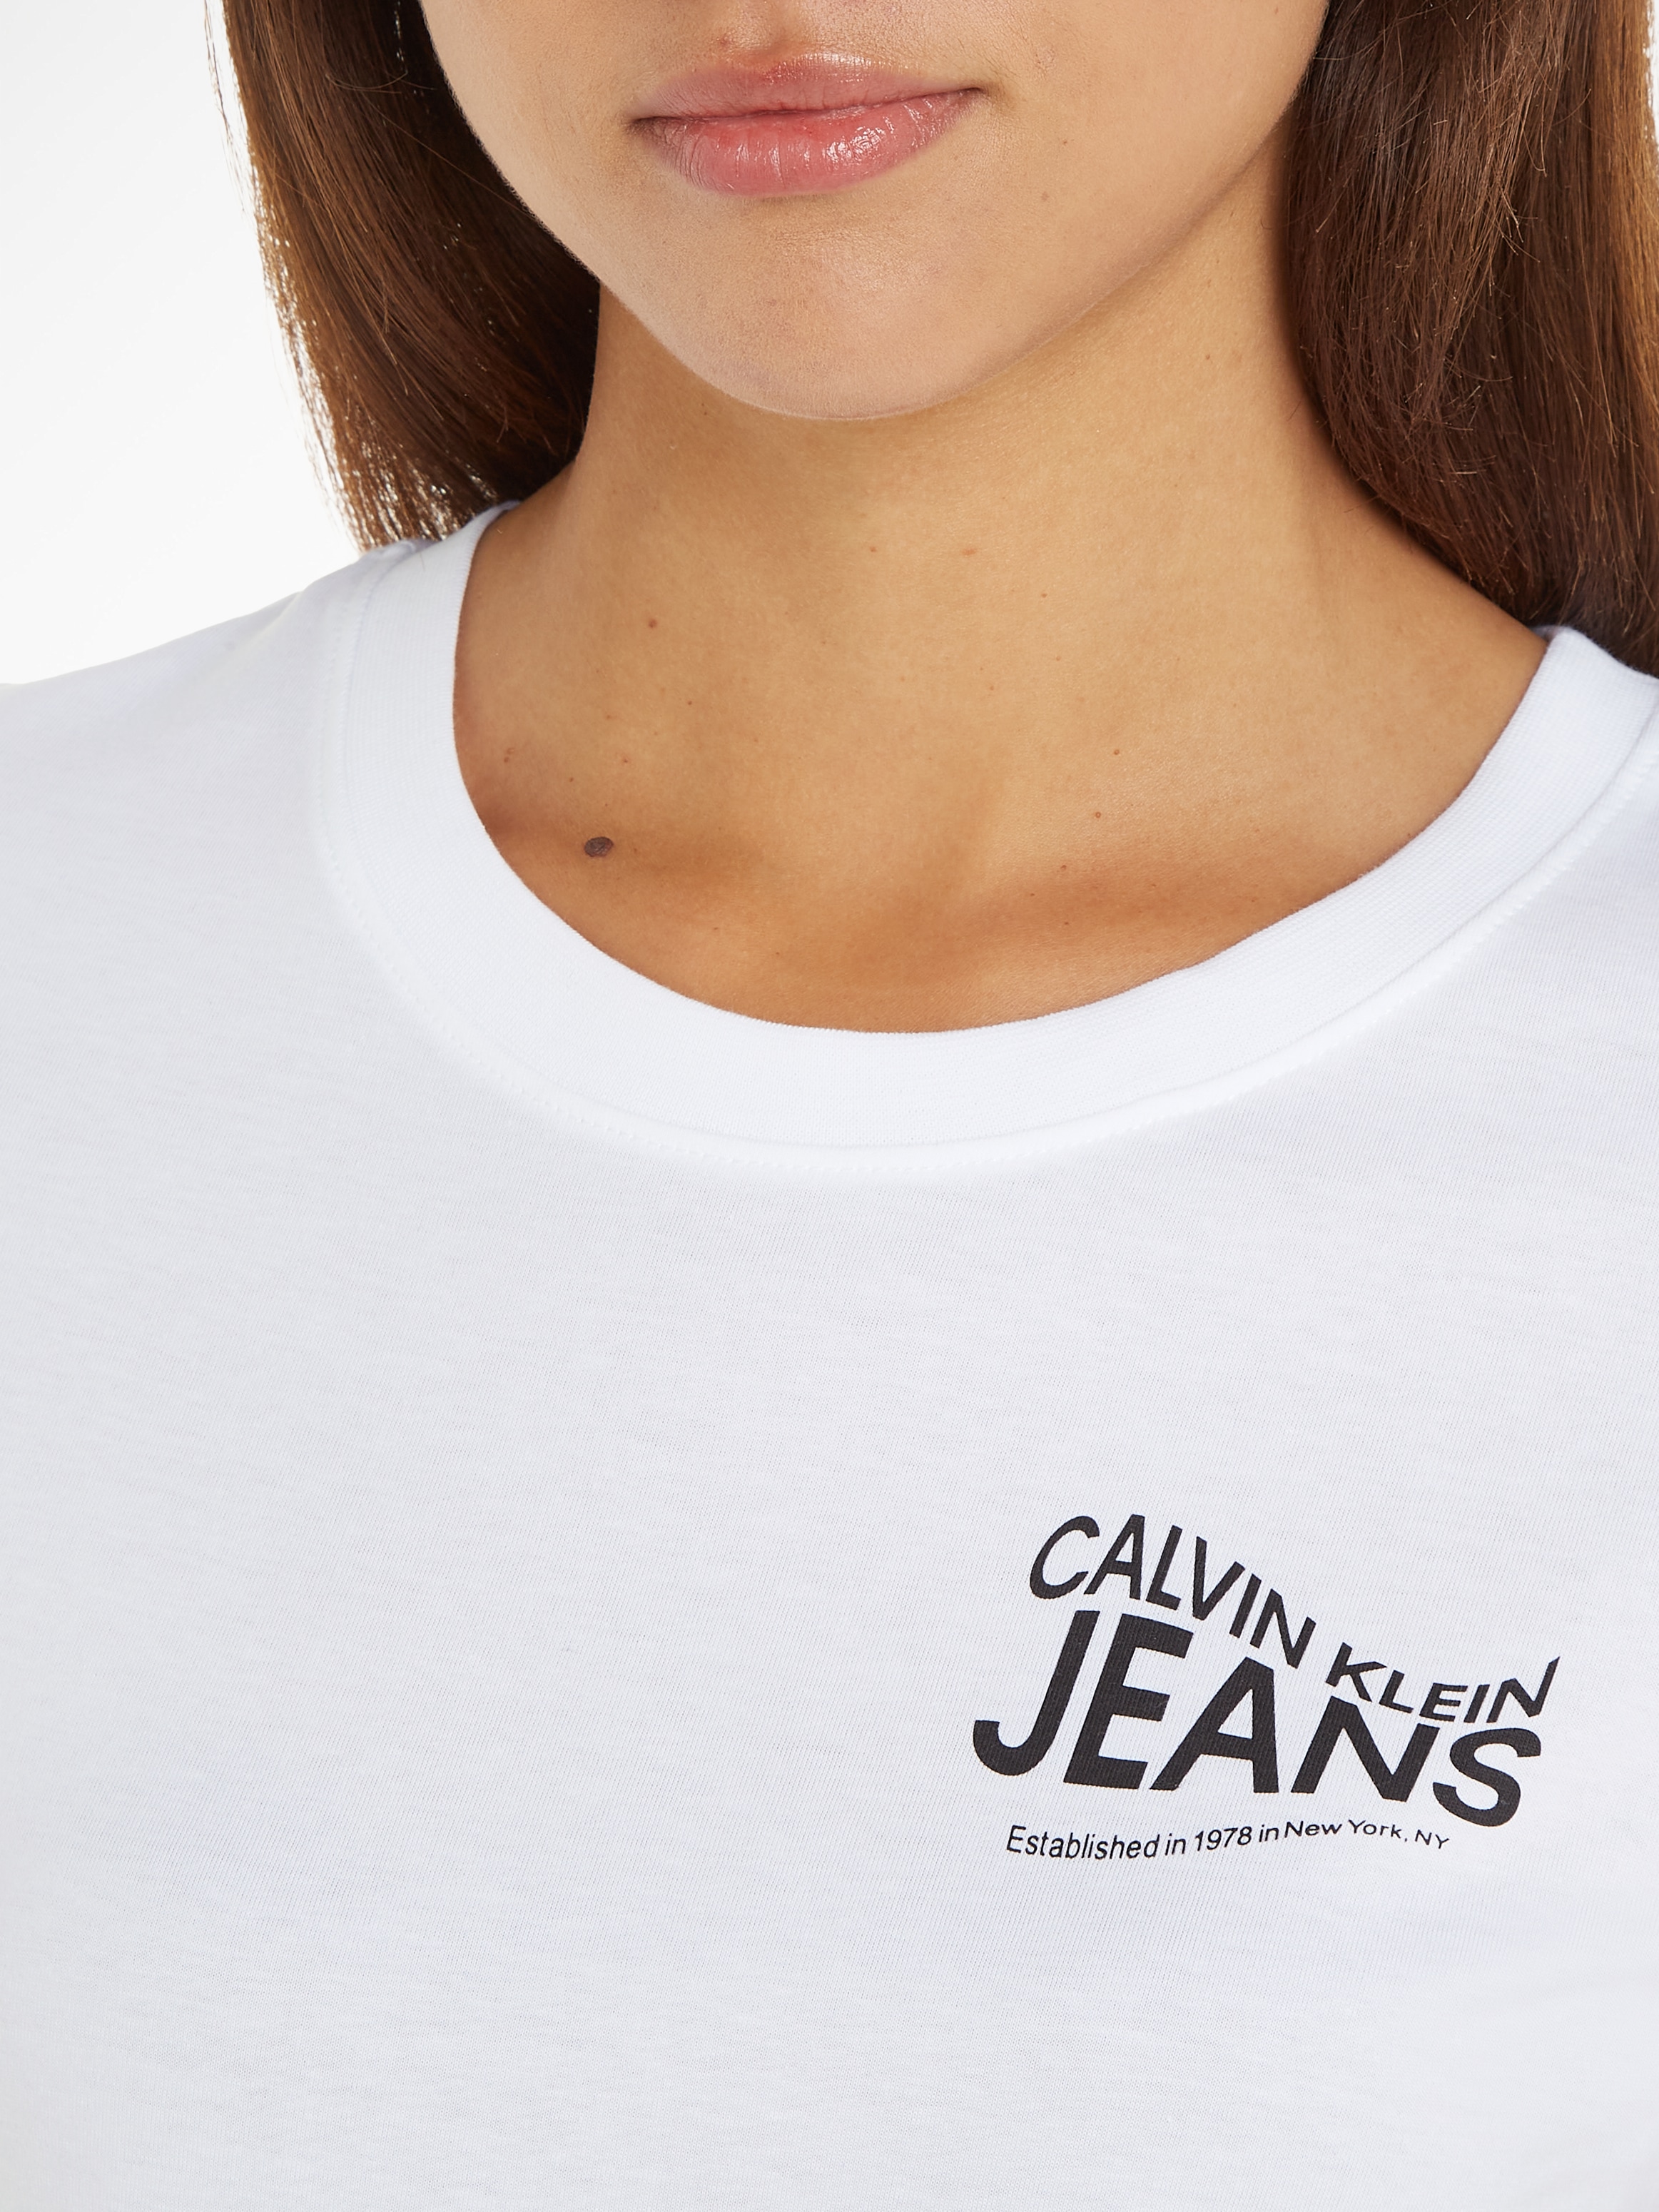 ♕ Jeans Calvin T-Shirt Klein versandkostenfrei bestellen